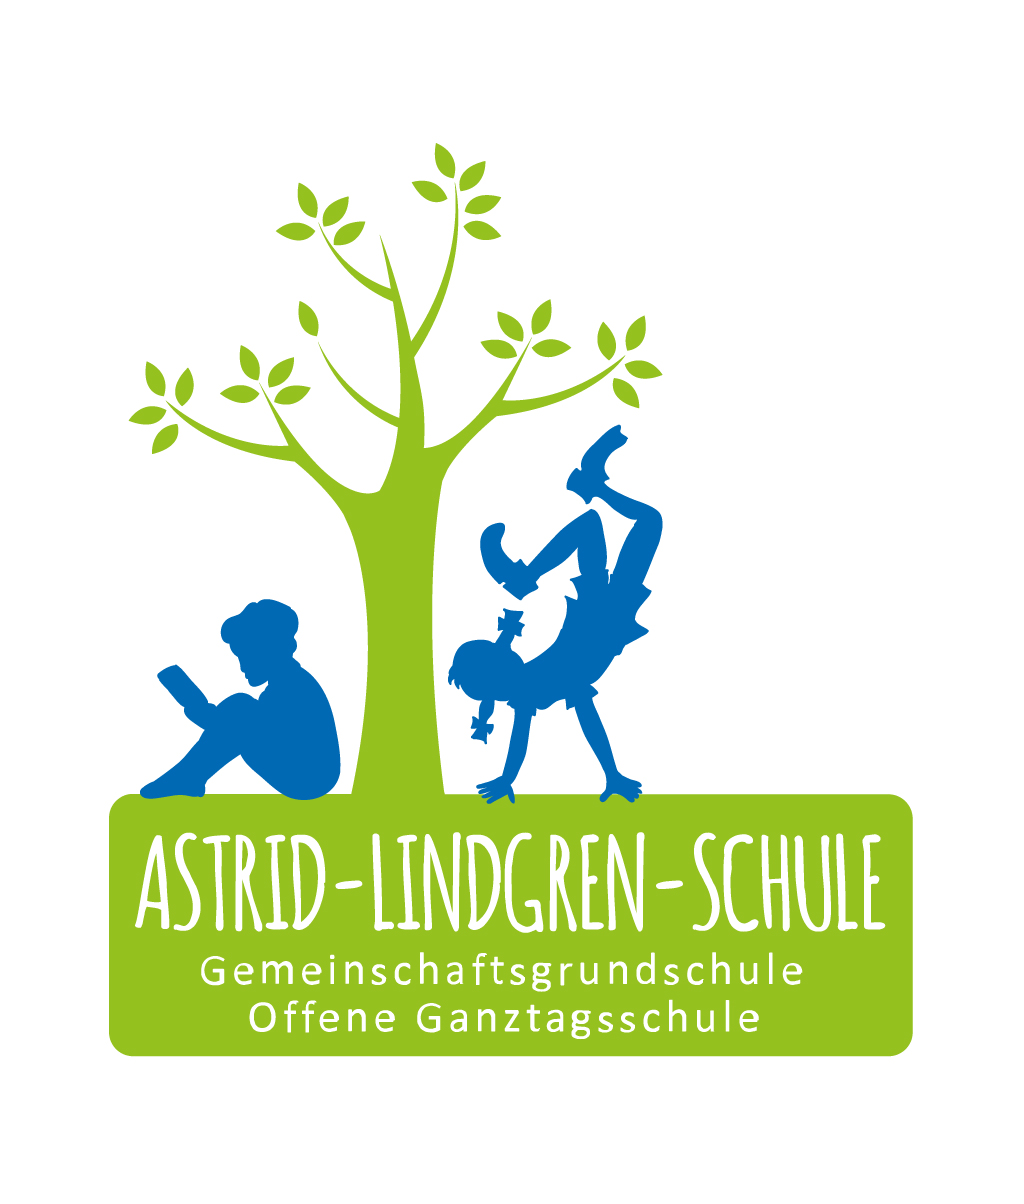 (c) Astrid-lindgren-schule-willich.de